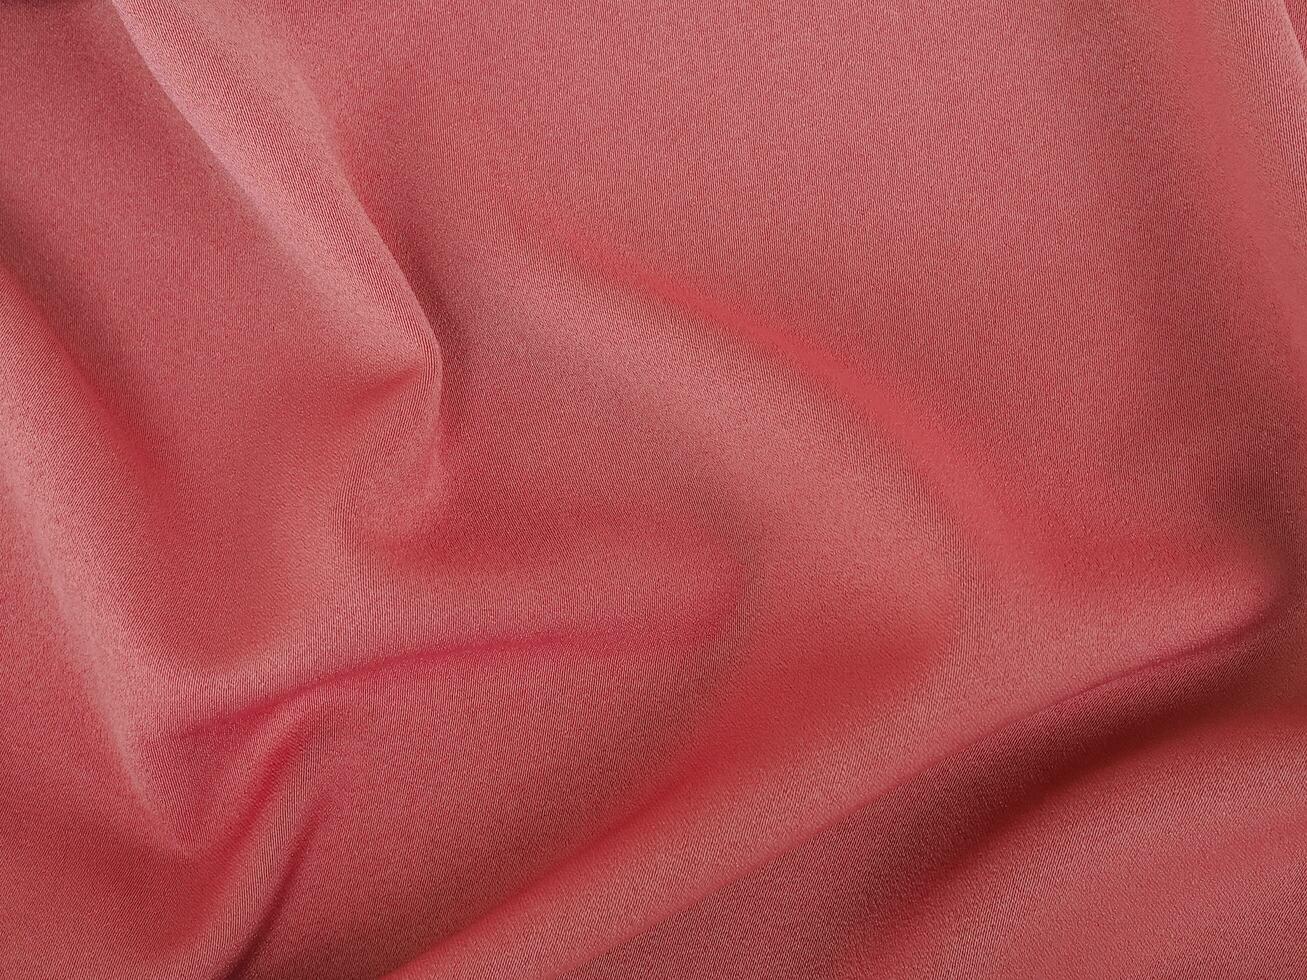 tecido textura do natural algodão, lã, seda ou linho têxtil material. rosa ouro tecido fundo foto